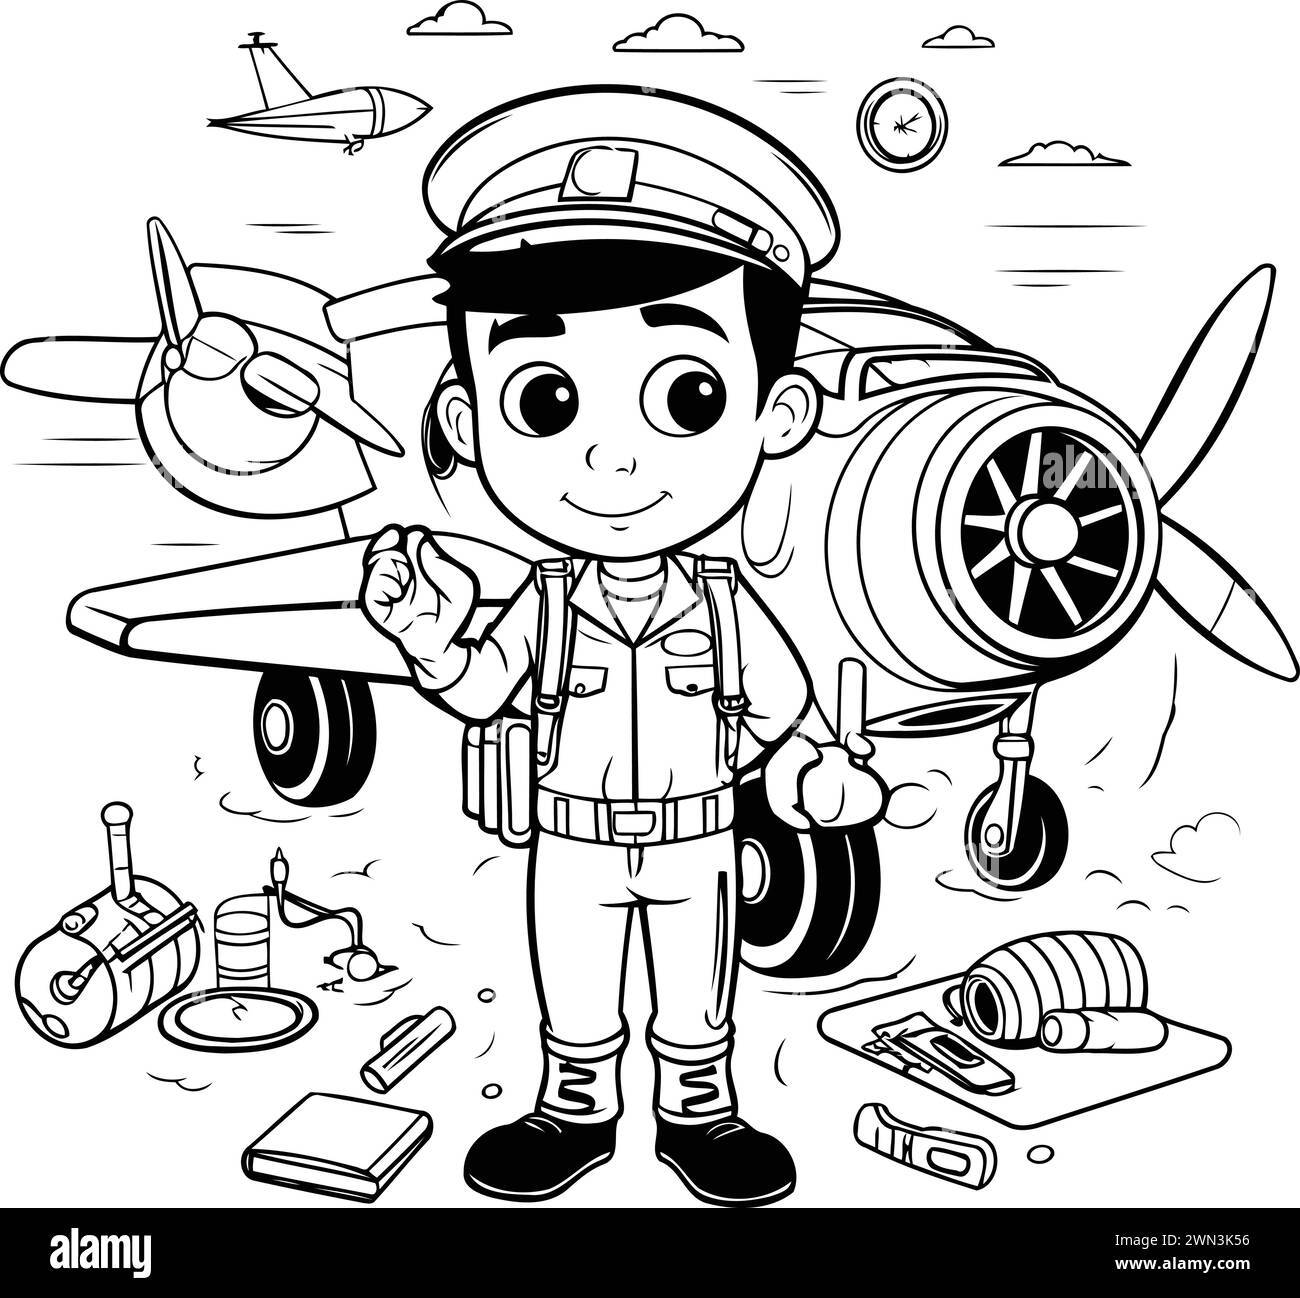 Pilot Drawing Images - Free Download on Freepik